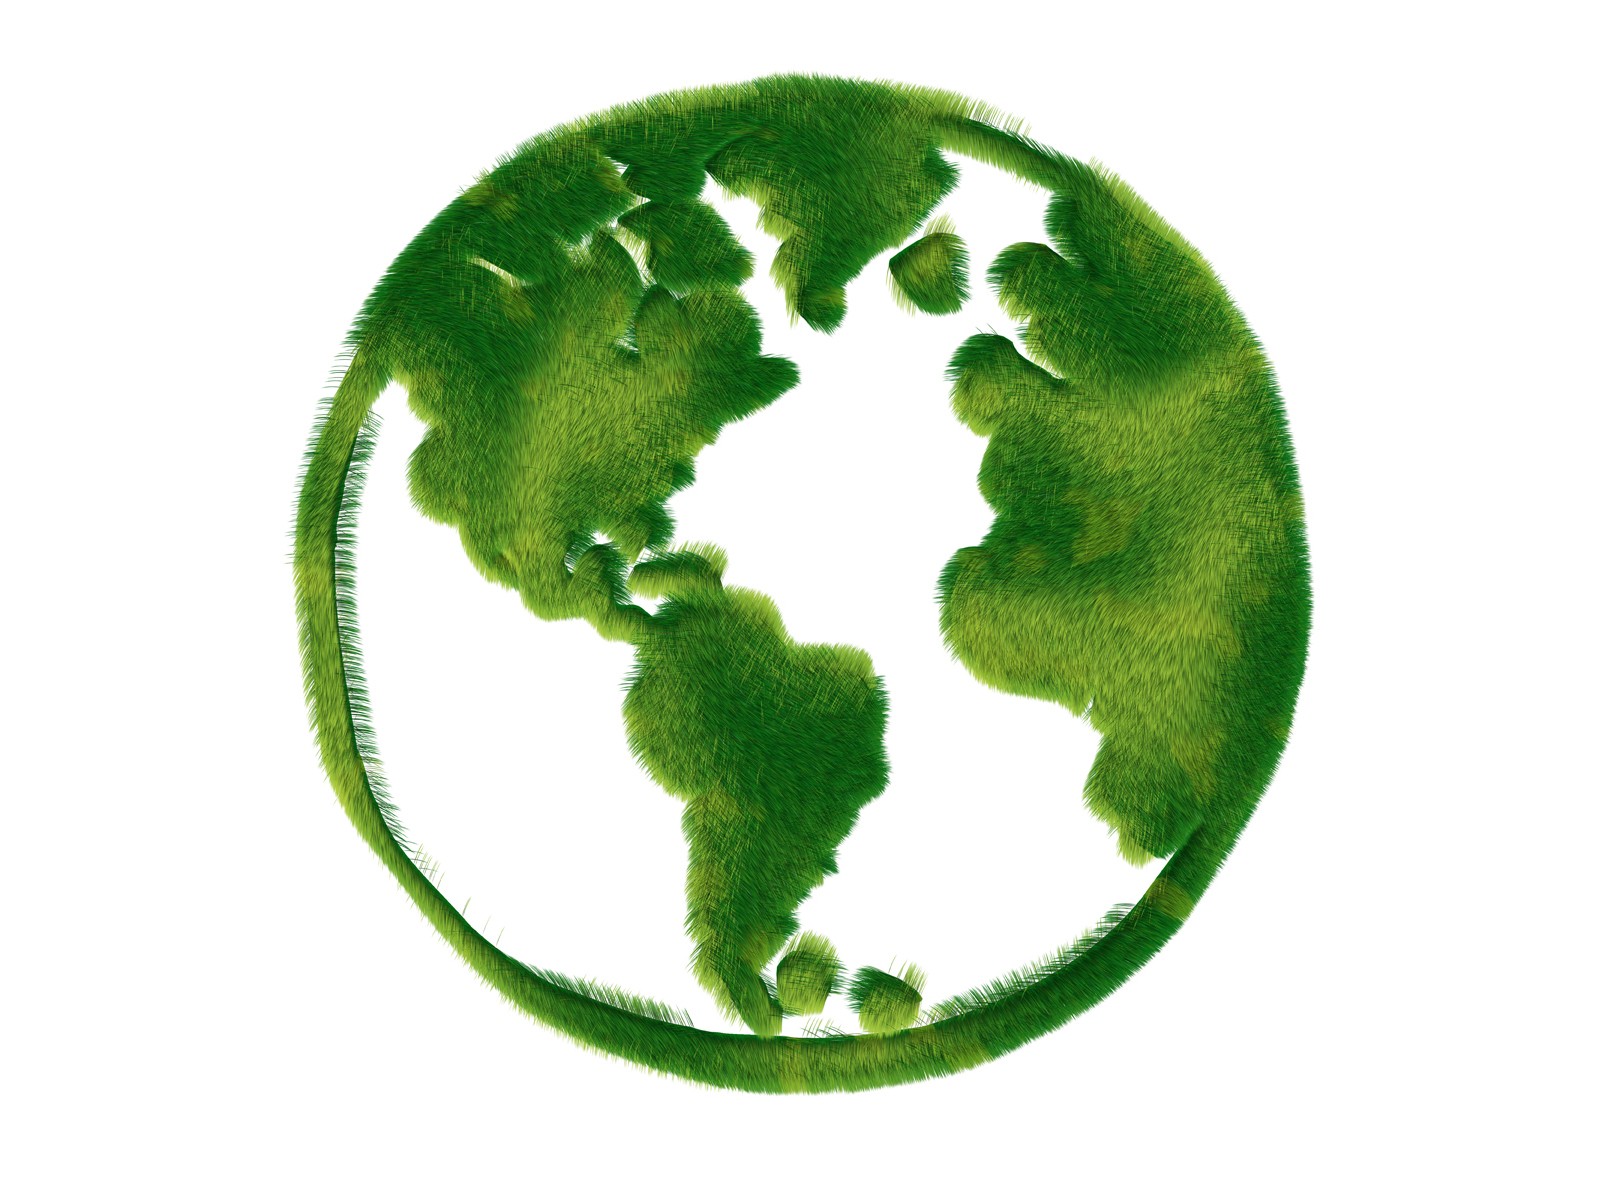 壁纸1600x1200 绿色地球 绿色和平环保标志 1920 1200壁纸 绿色和平环保标志-循环利用壁纸 绿色和平环保标志-循环利用图片 绿色和平环保标志-循环利用素材 插画壁纸 插画图库 插画图片素材桌面壁纸